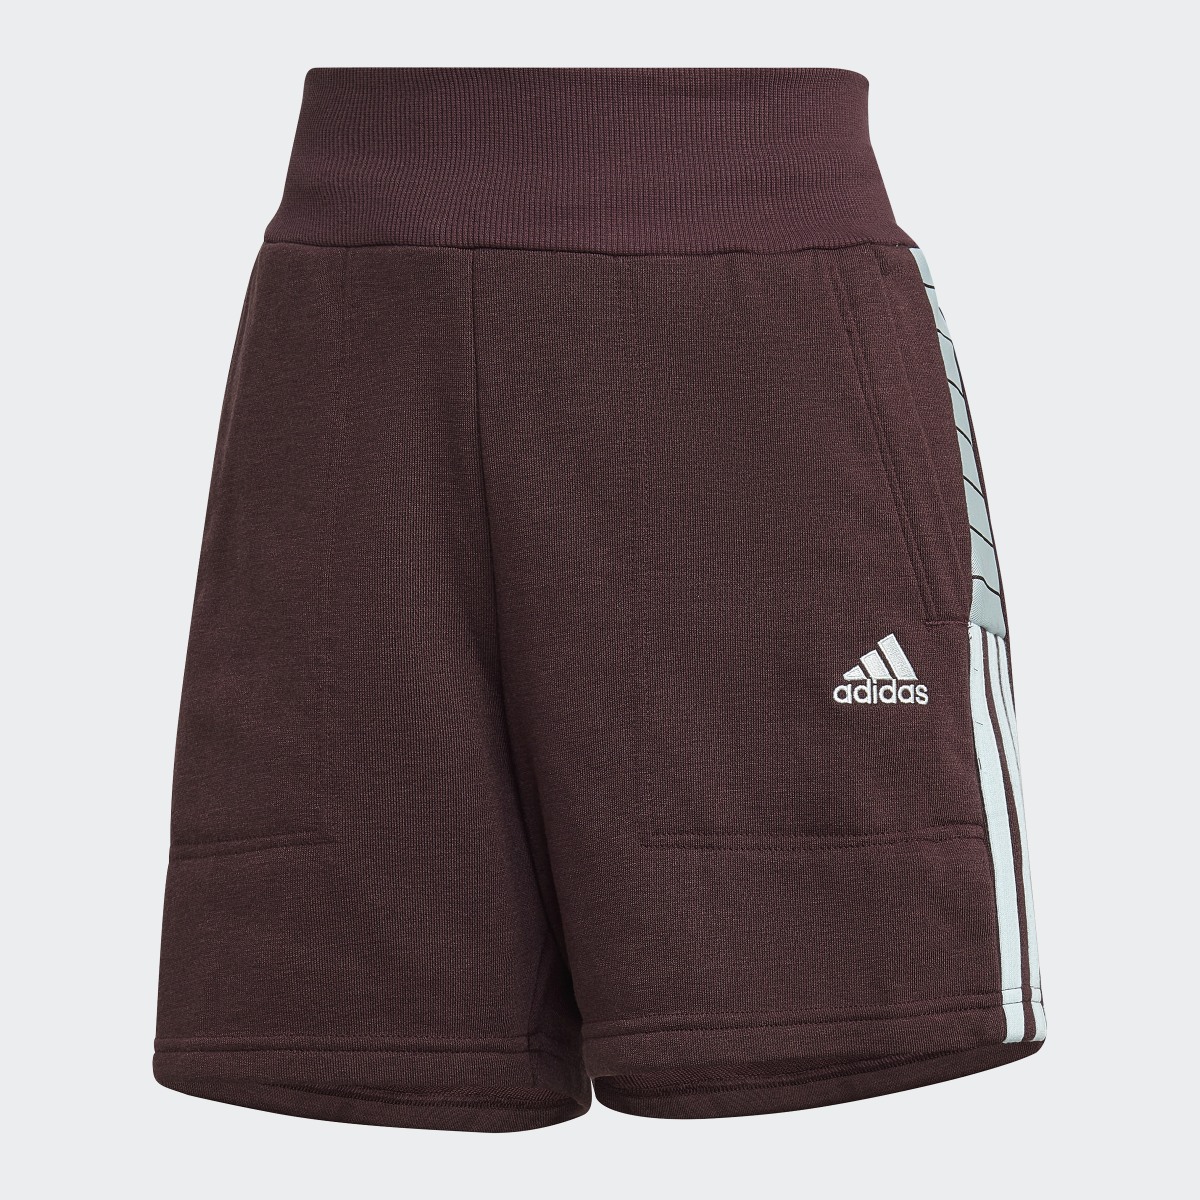 Adidas Tiro Shorts. 4